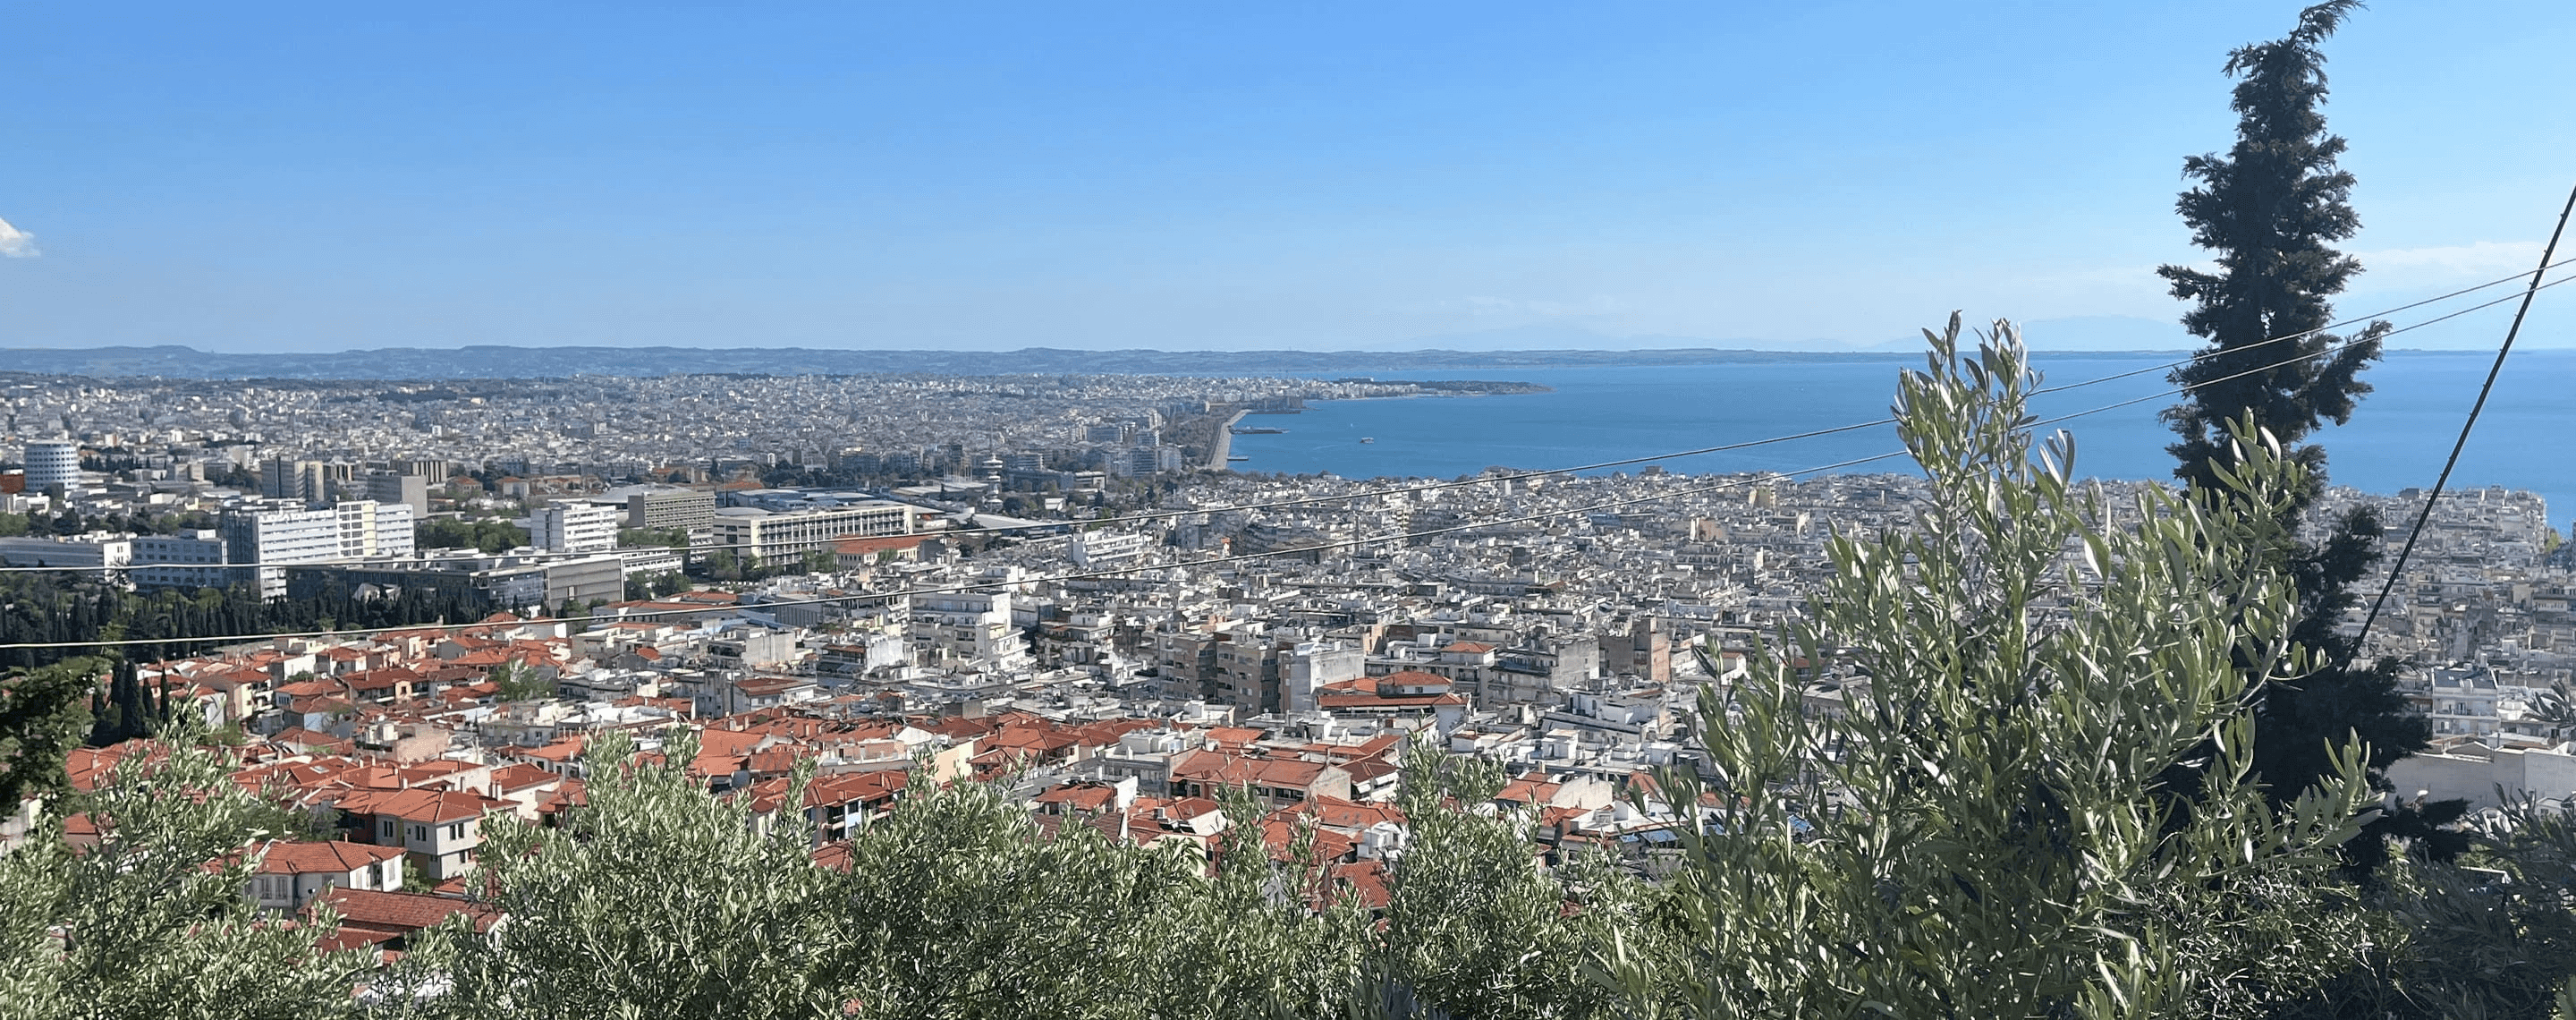 Panoramablick auf die griechische Metropole Thessaloniki